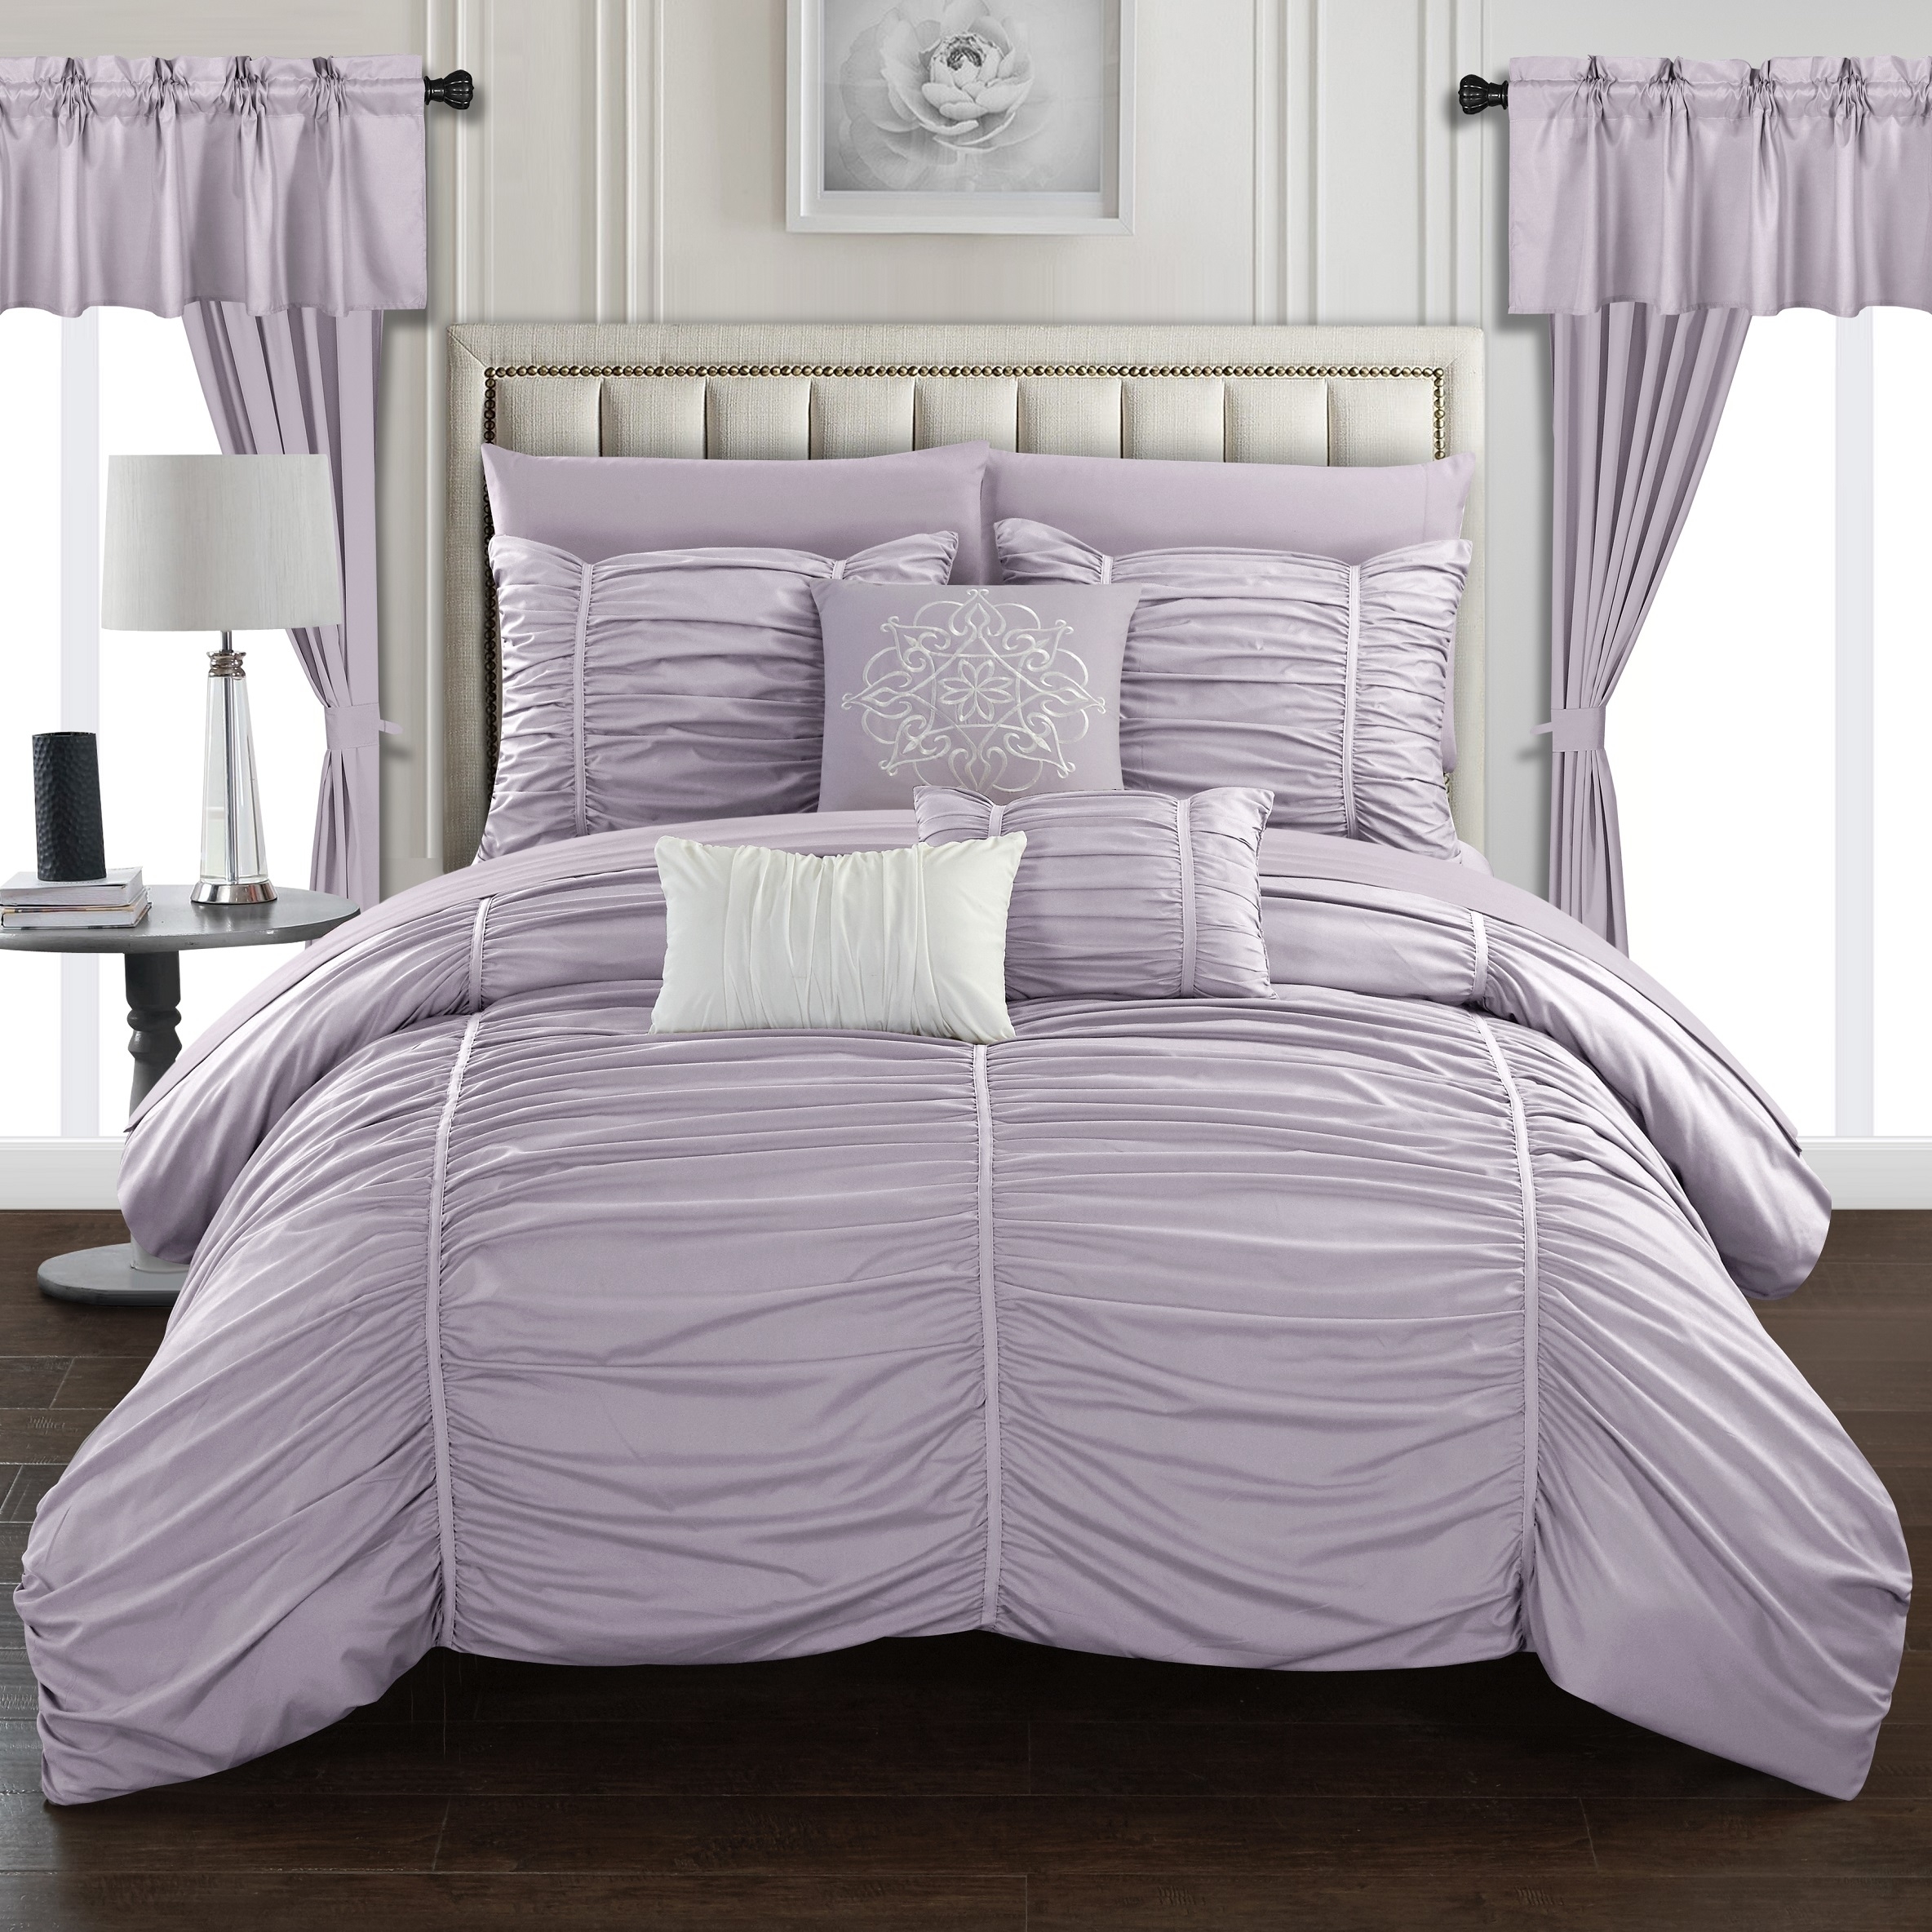 Gruyeres 20 Piece Comforter Set Ruffled Ruched Designer Bedding - Purple, Queen